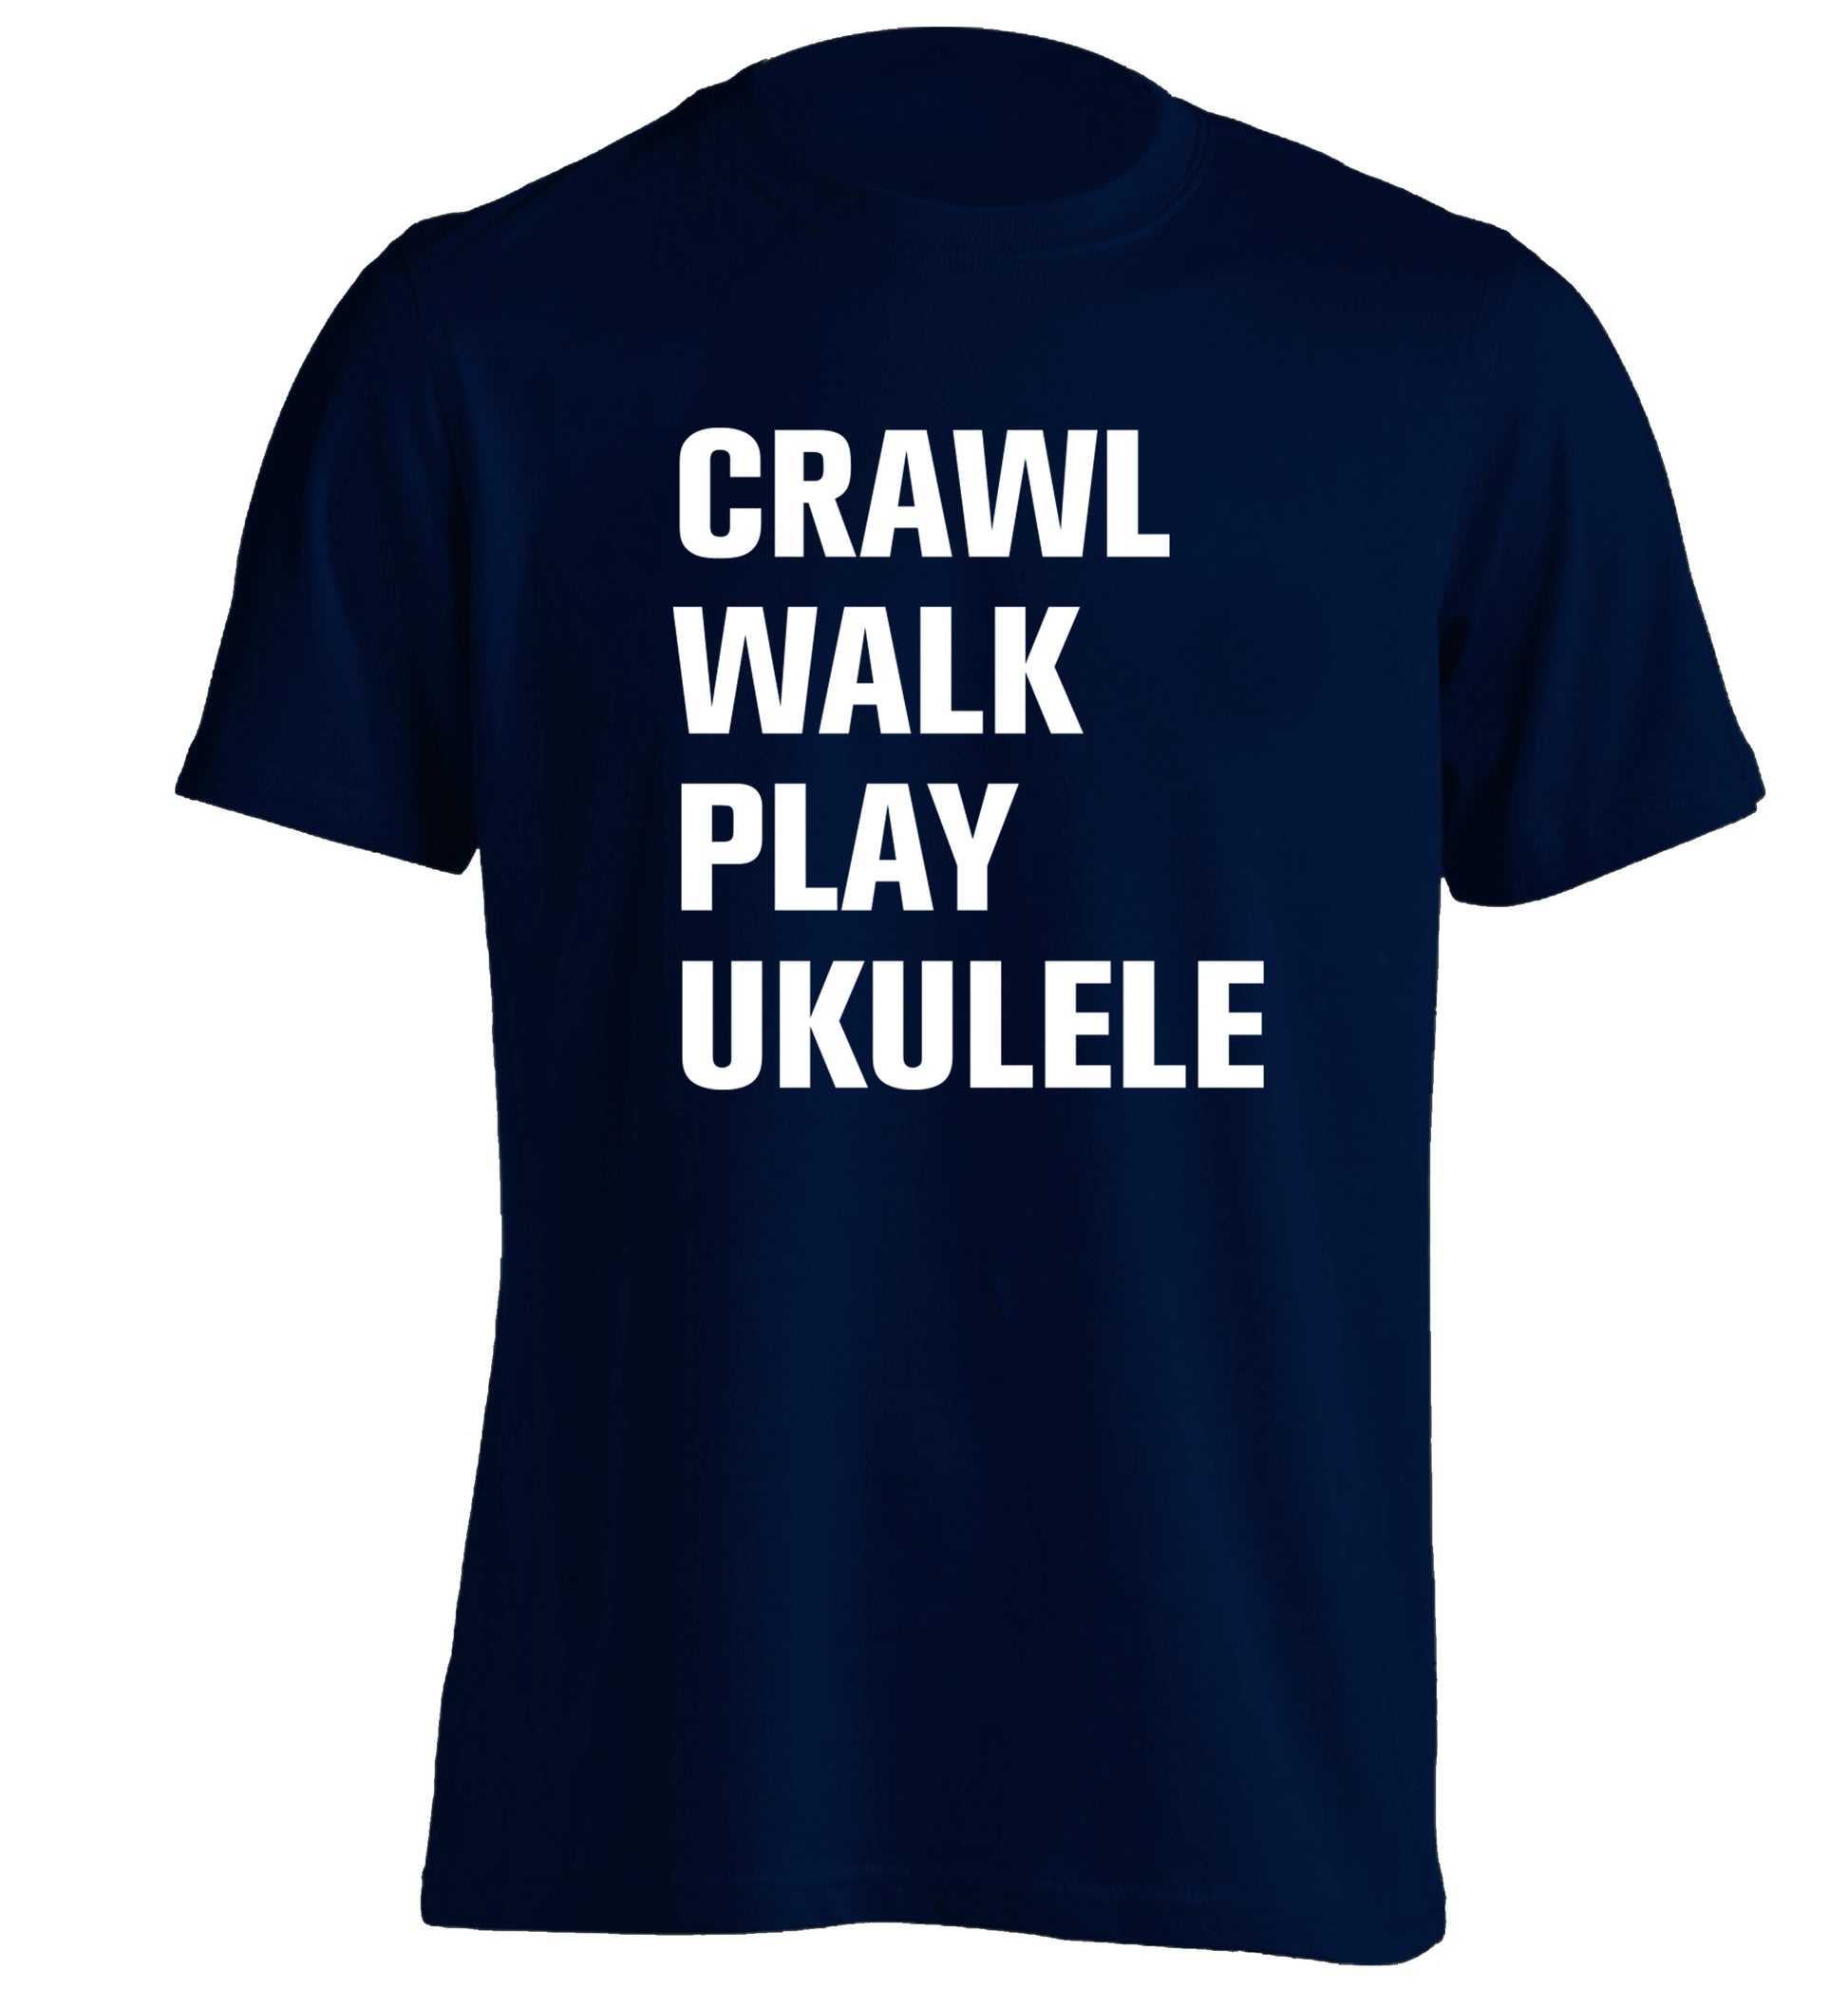 Crawl walk play ukulele adults unisex navy Tshirt 2XL